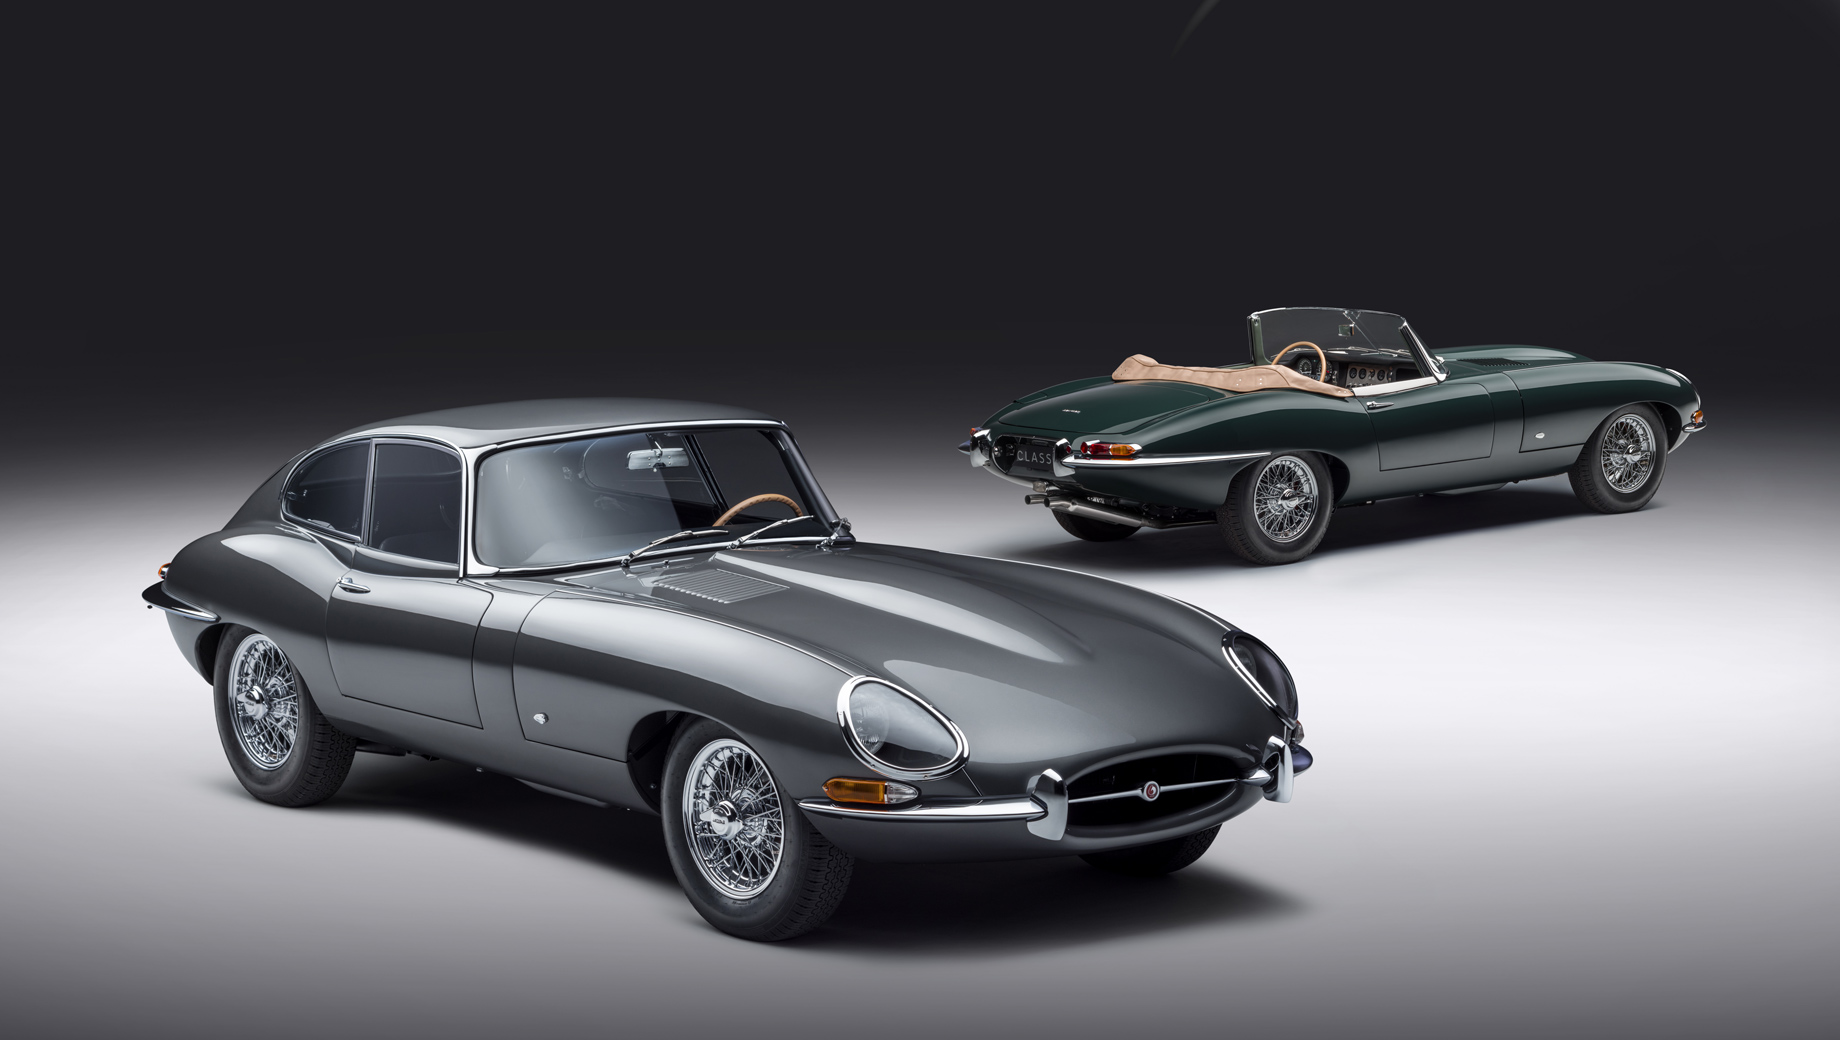 Jaguar e-type. Все купе окрасят в неповторимый цвет Flat Out Grey, а интерьер будет отделан кожей Smooth Black. У родстера — кузов уникального оттенка Drop Everything Green, интерьер — Suede Green. В обоих случаях салон получит элементы из 1961 года.